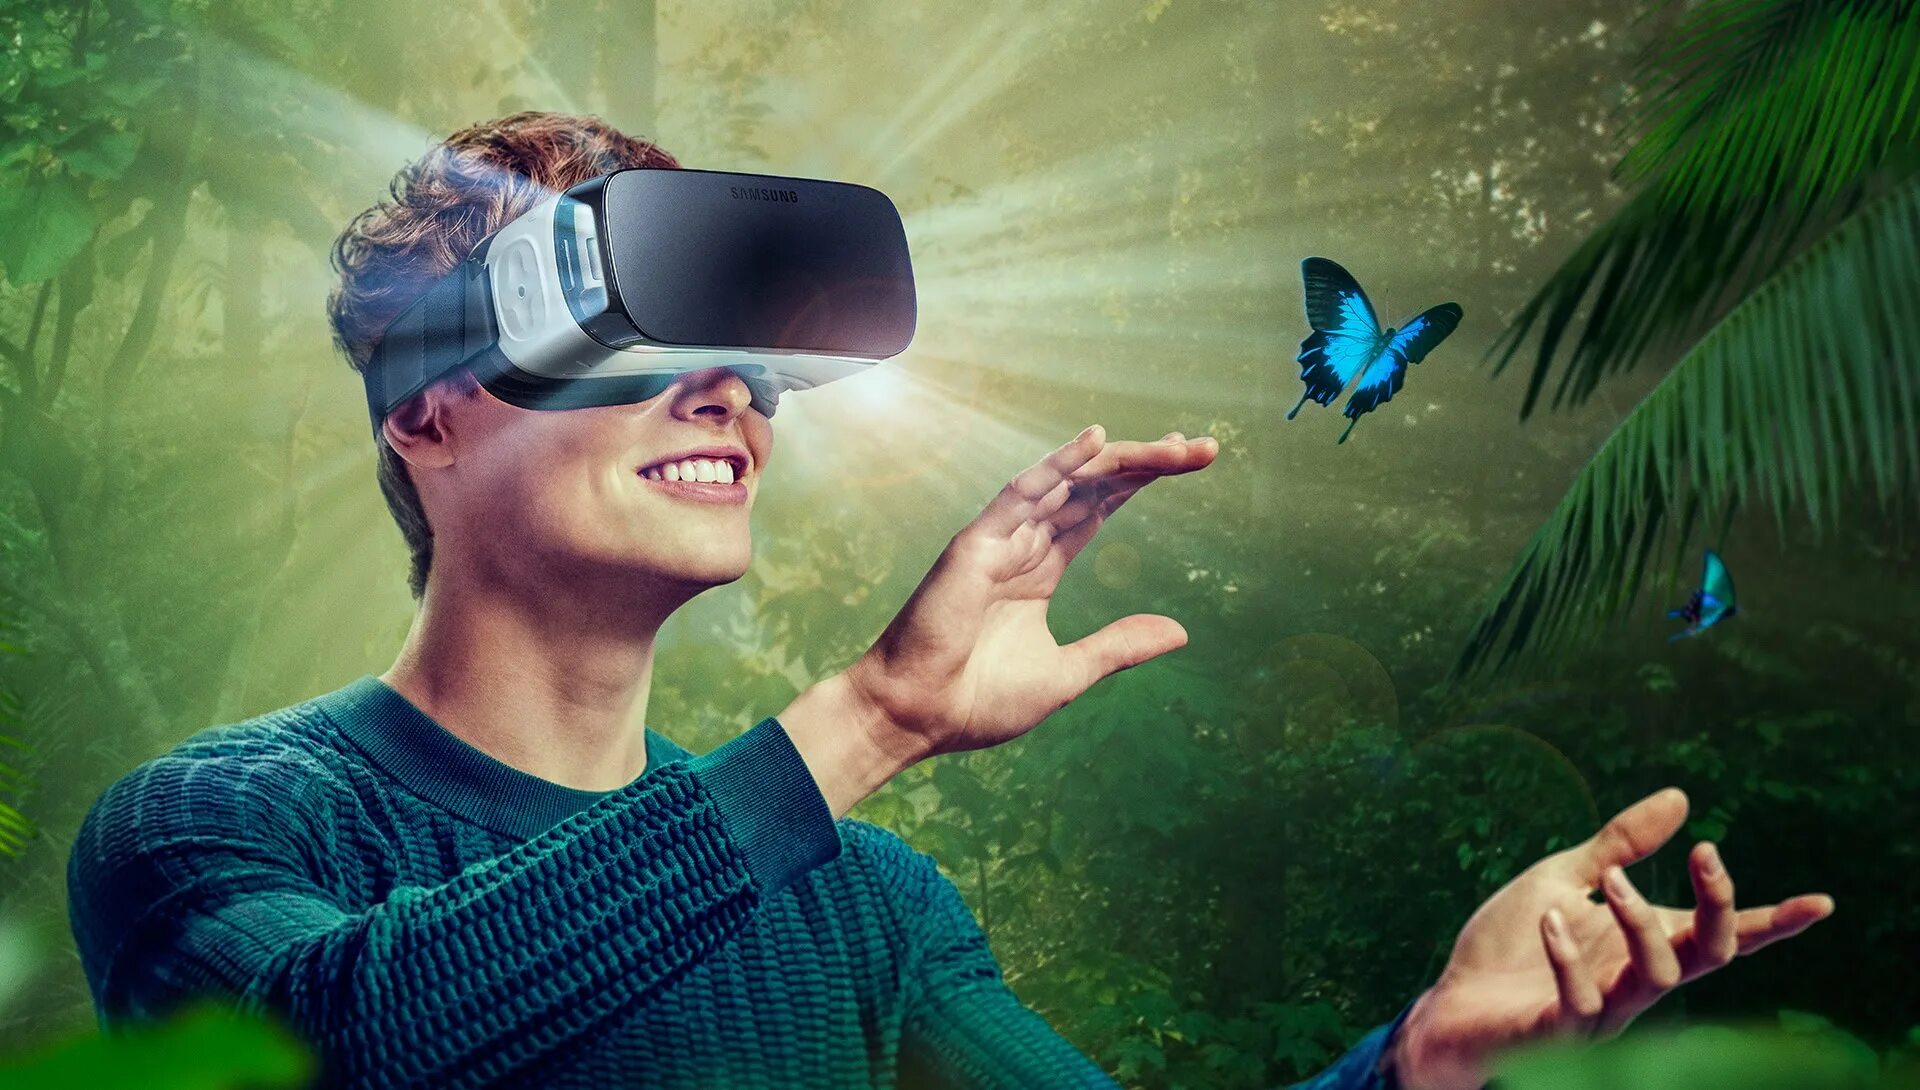 Познавательной реальностью. Виртуальная реальность (Virtual reality, VR). Визуальная реальность. Иртуальная реальность. Очки виртуальной реальности на человеке.